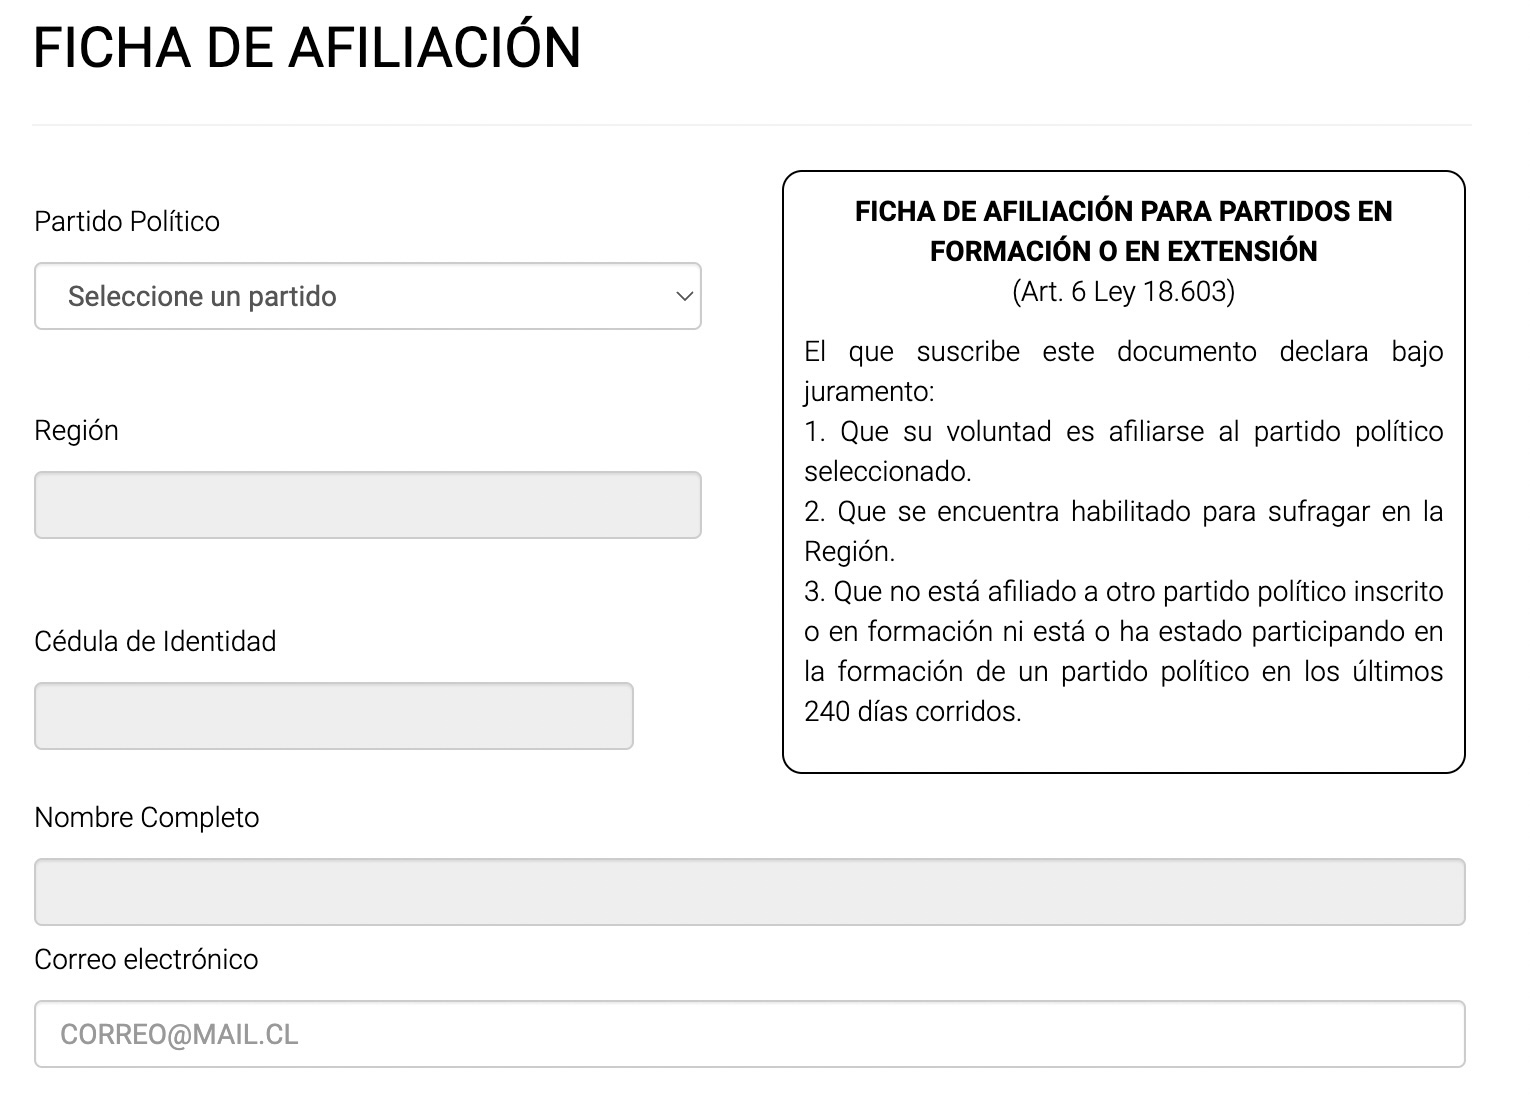 Pantallazo del sitio web del Servel, en la sección del trámite para afiliarse a un partido político